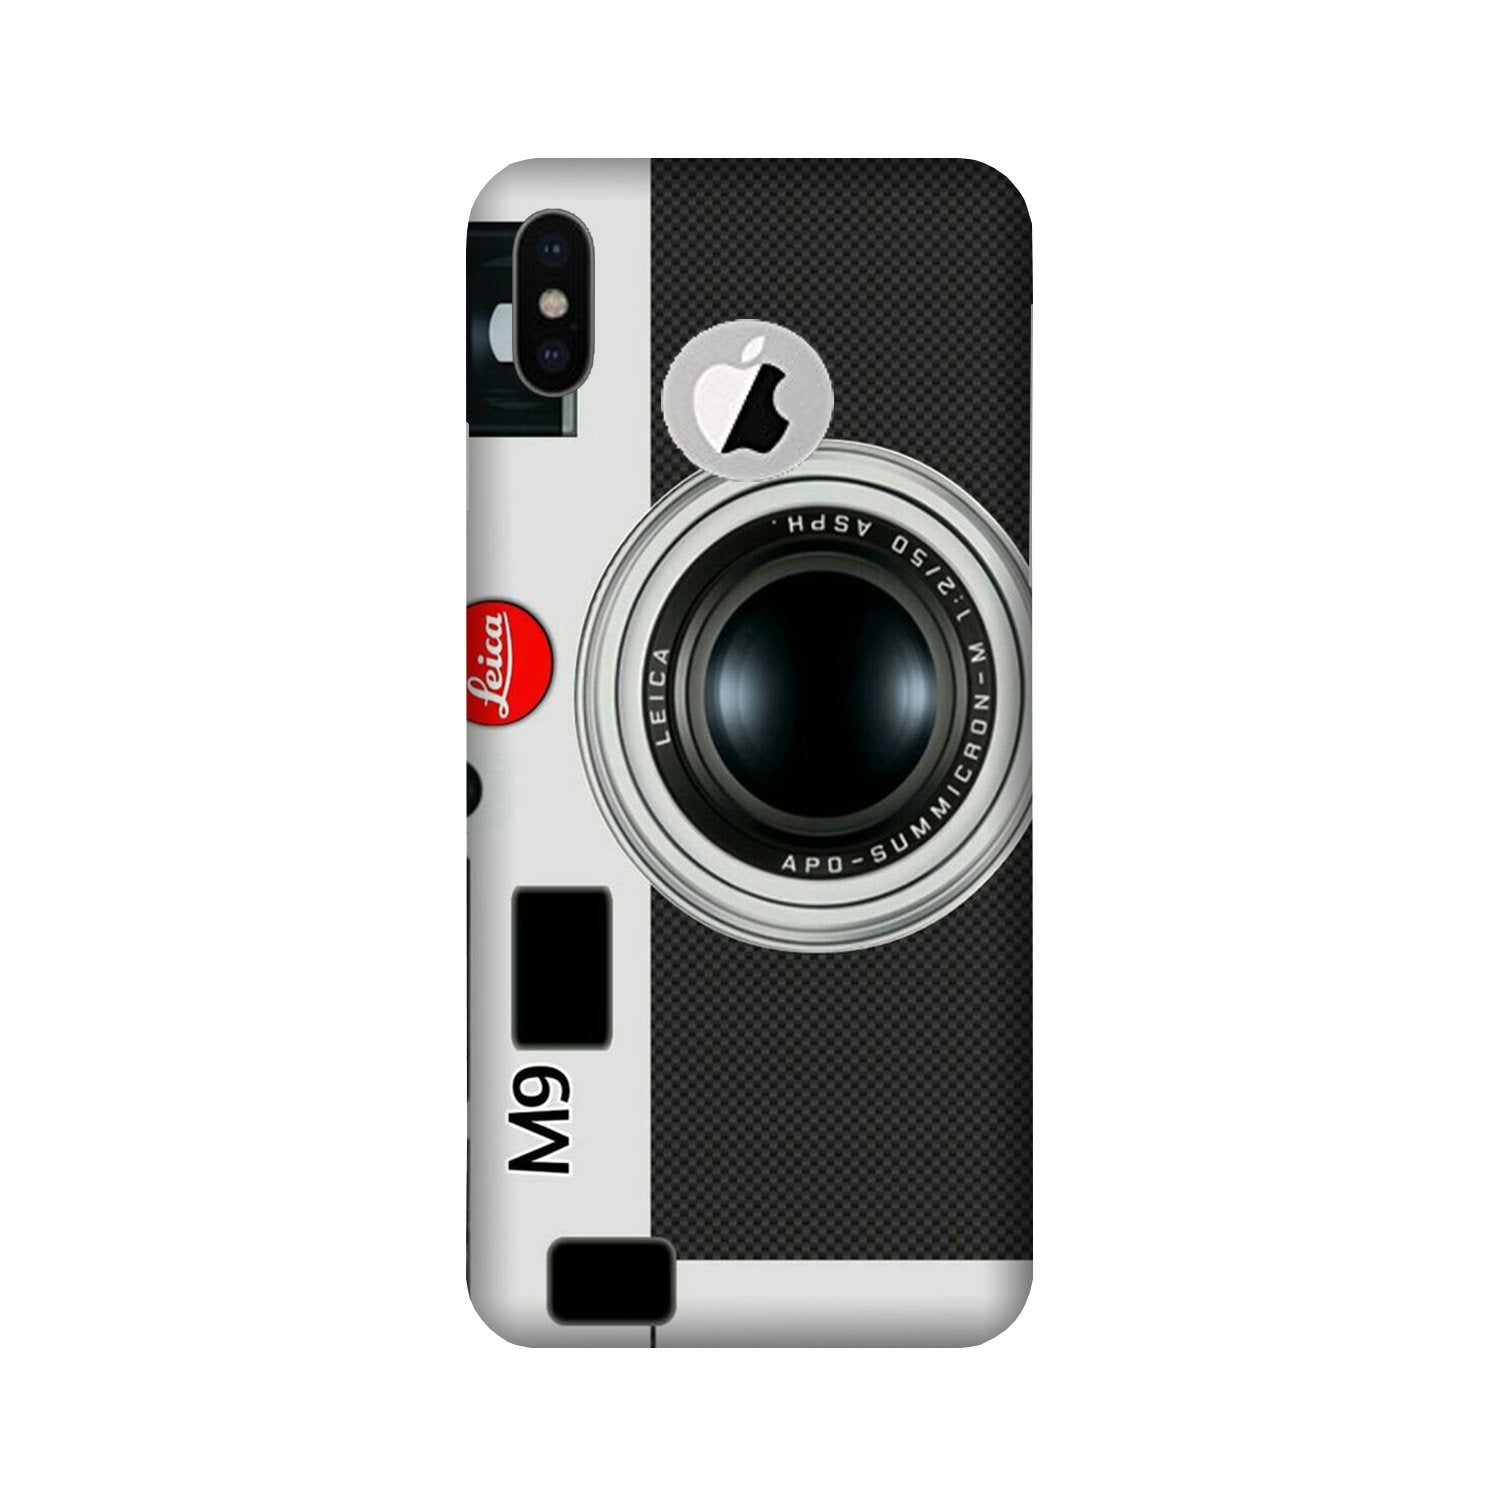 Camera Case for iPhone Xs logo cut  (Design No. 257)